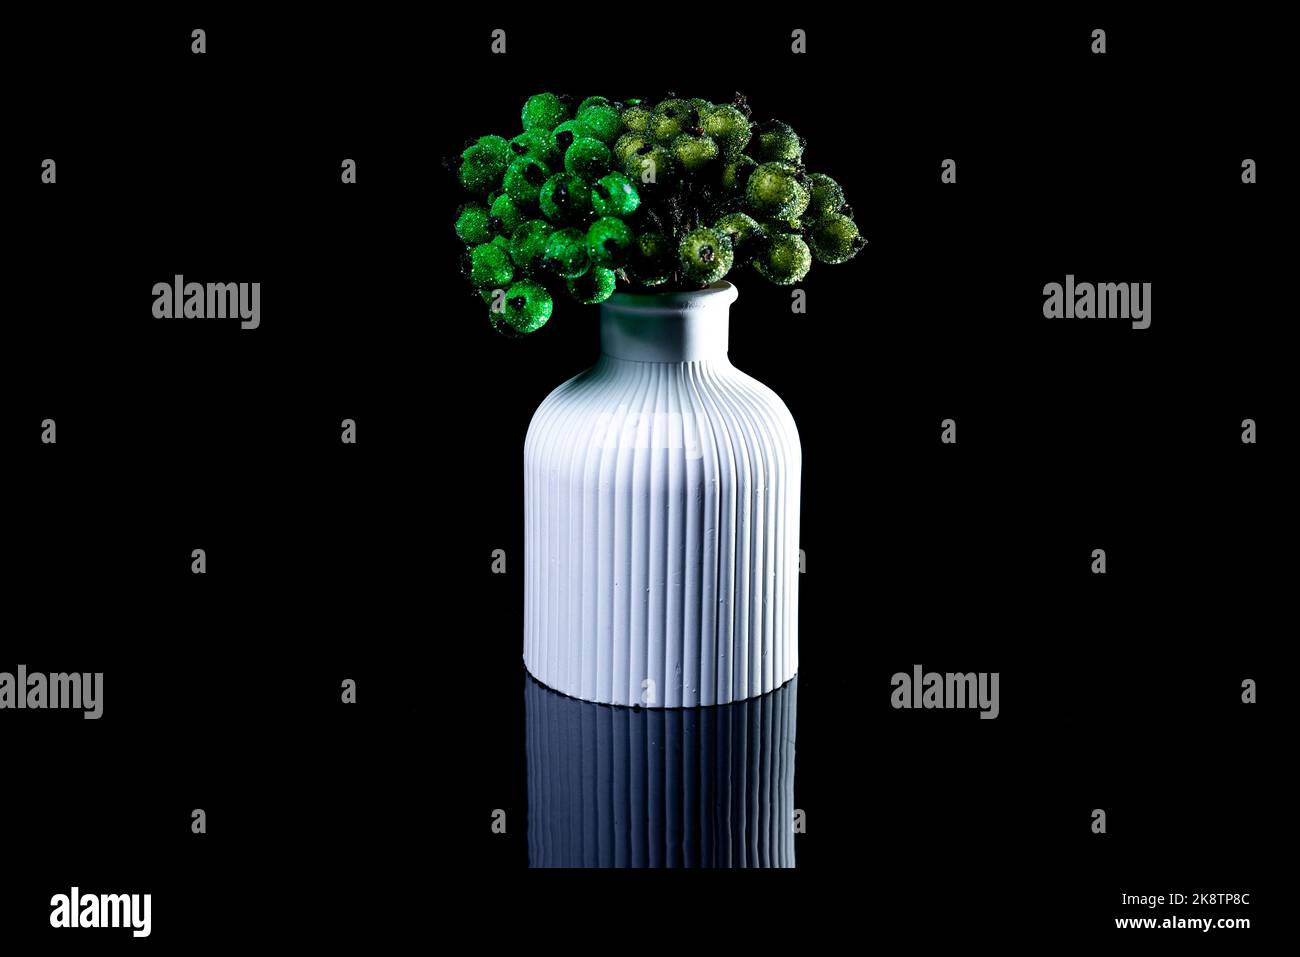 Eine Nahaufnahme von grünen Beeren im Eis in einer weißen Vase. Die Porzellanvase hat eine geriffelte Oberfläche. Die Vase mit einem Bund ist gegen die blsck BA isoliert Stockfoto